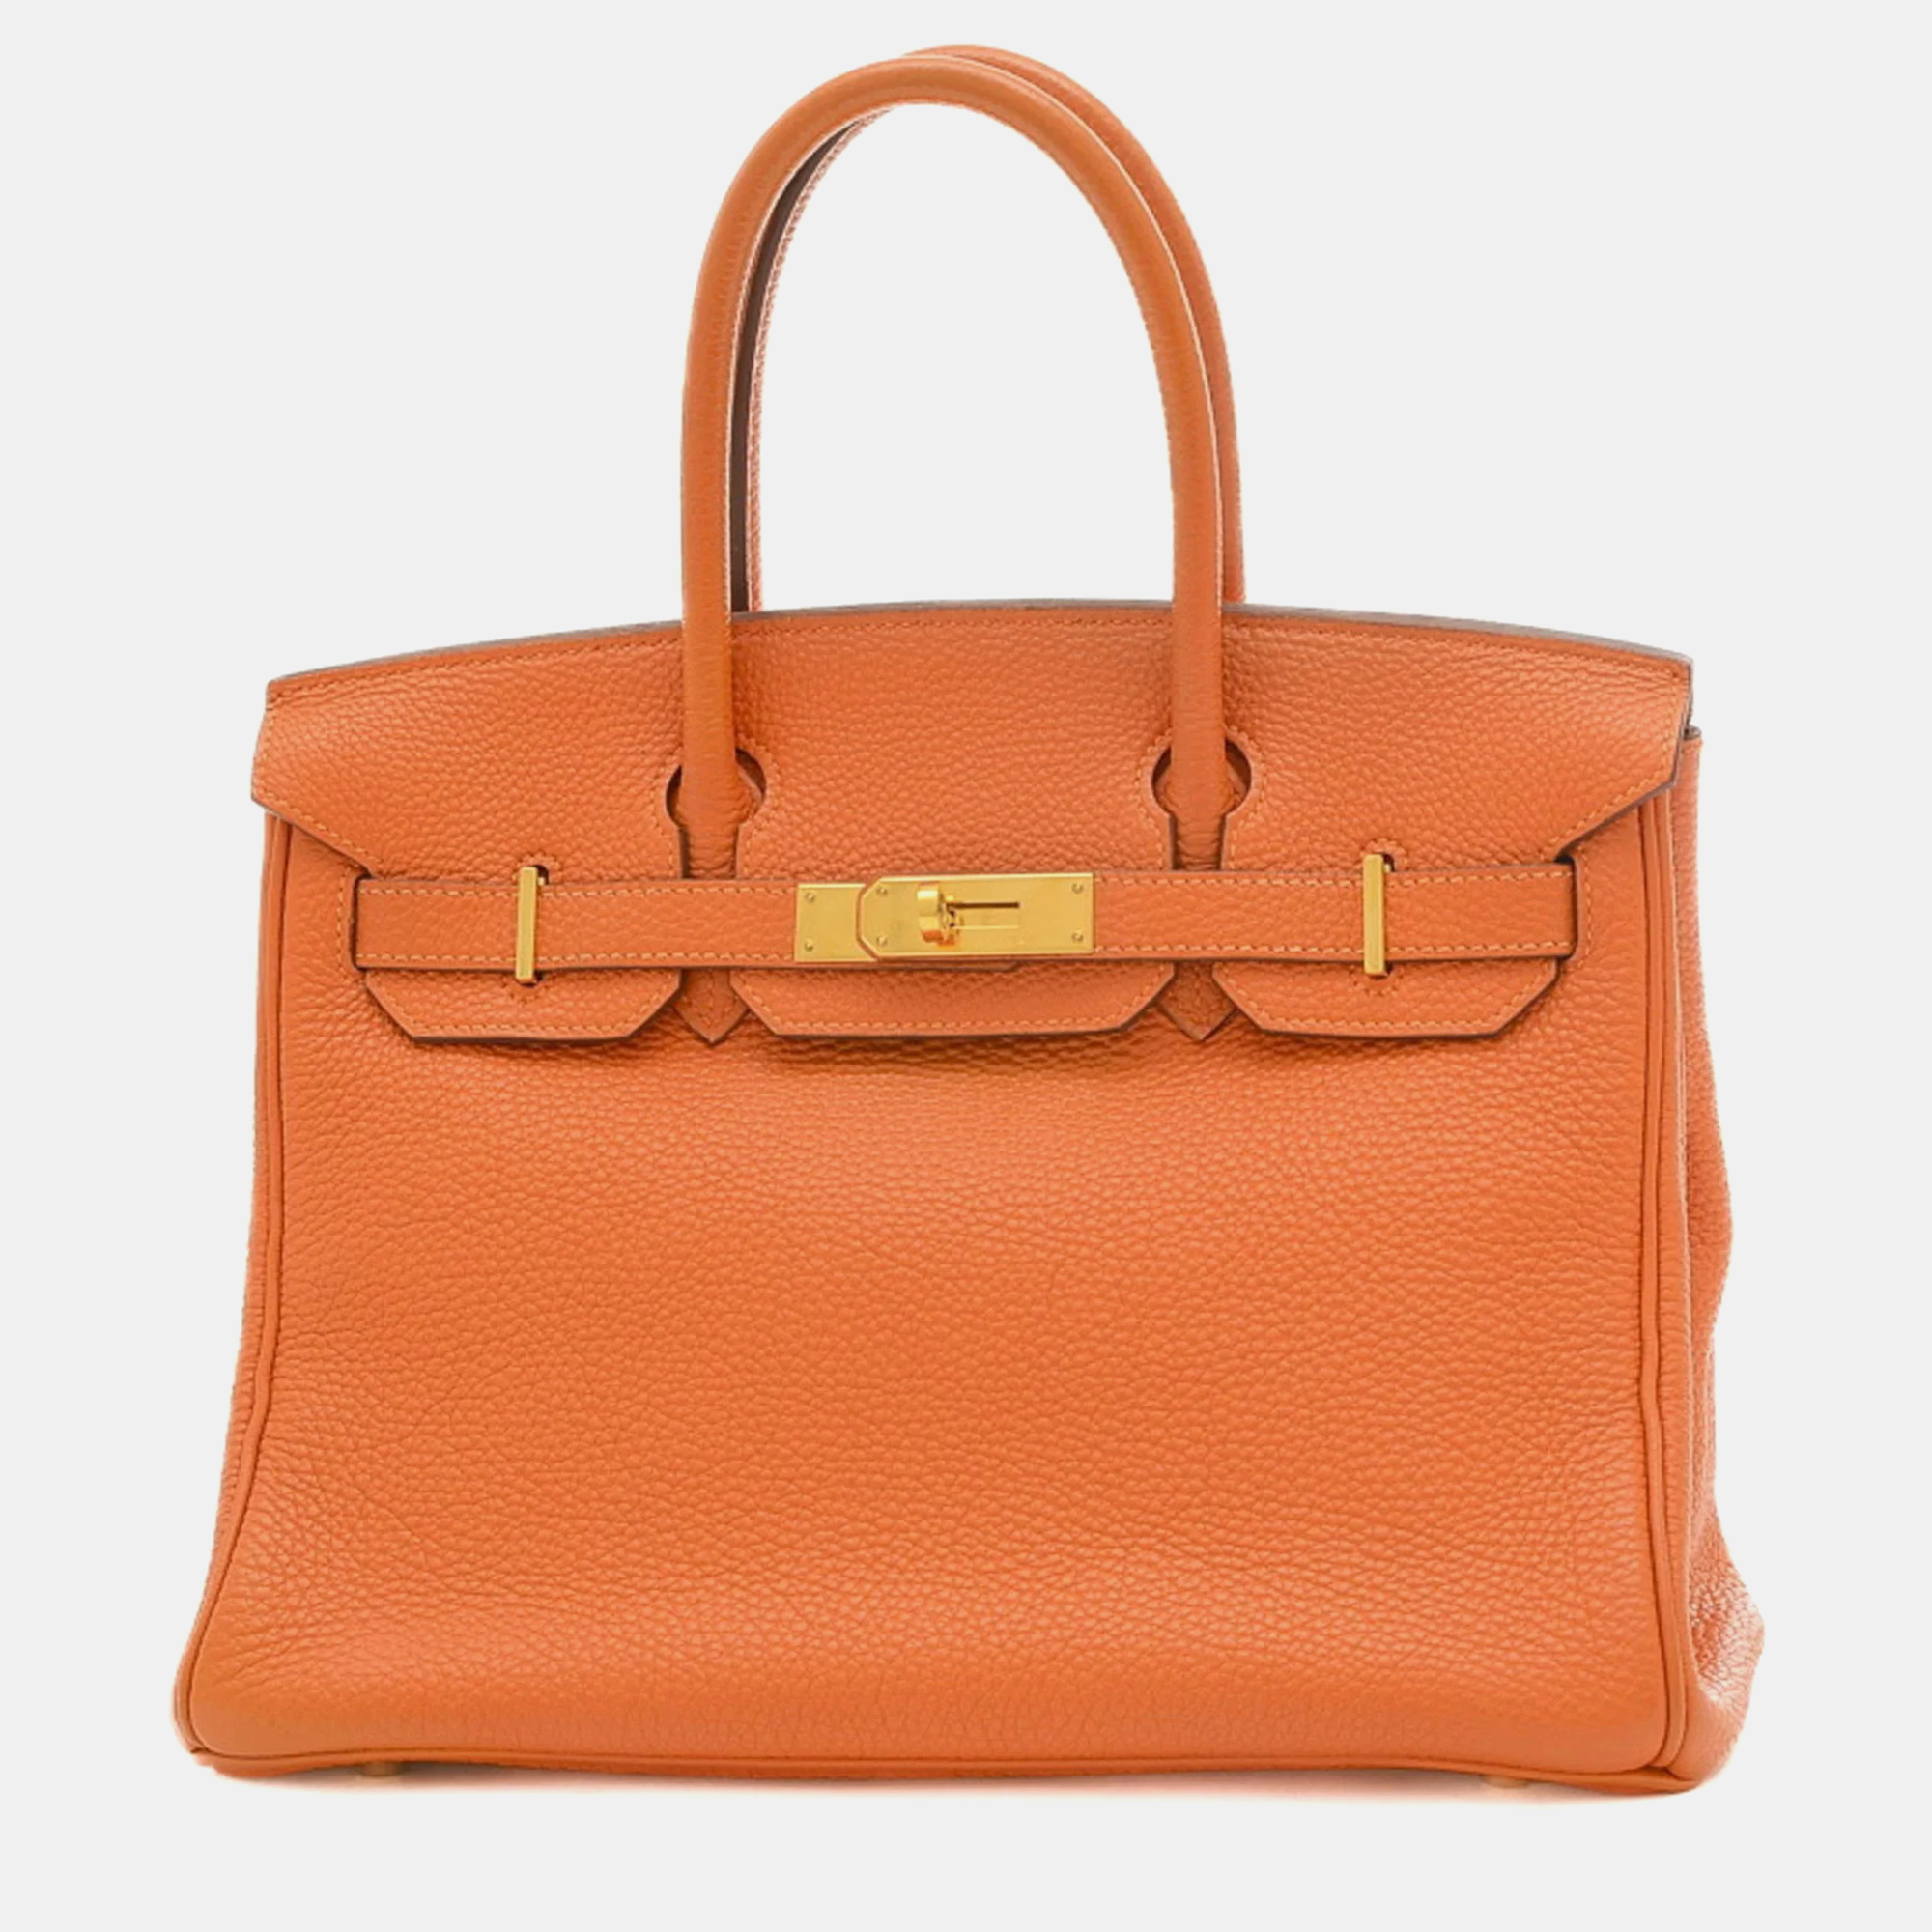 Hermes orange togo birkin 30 handbag